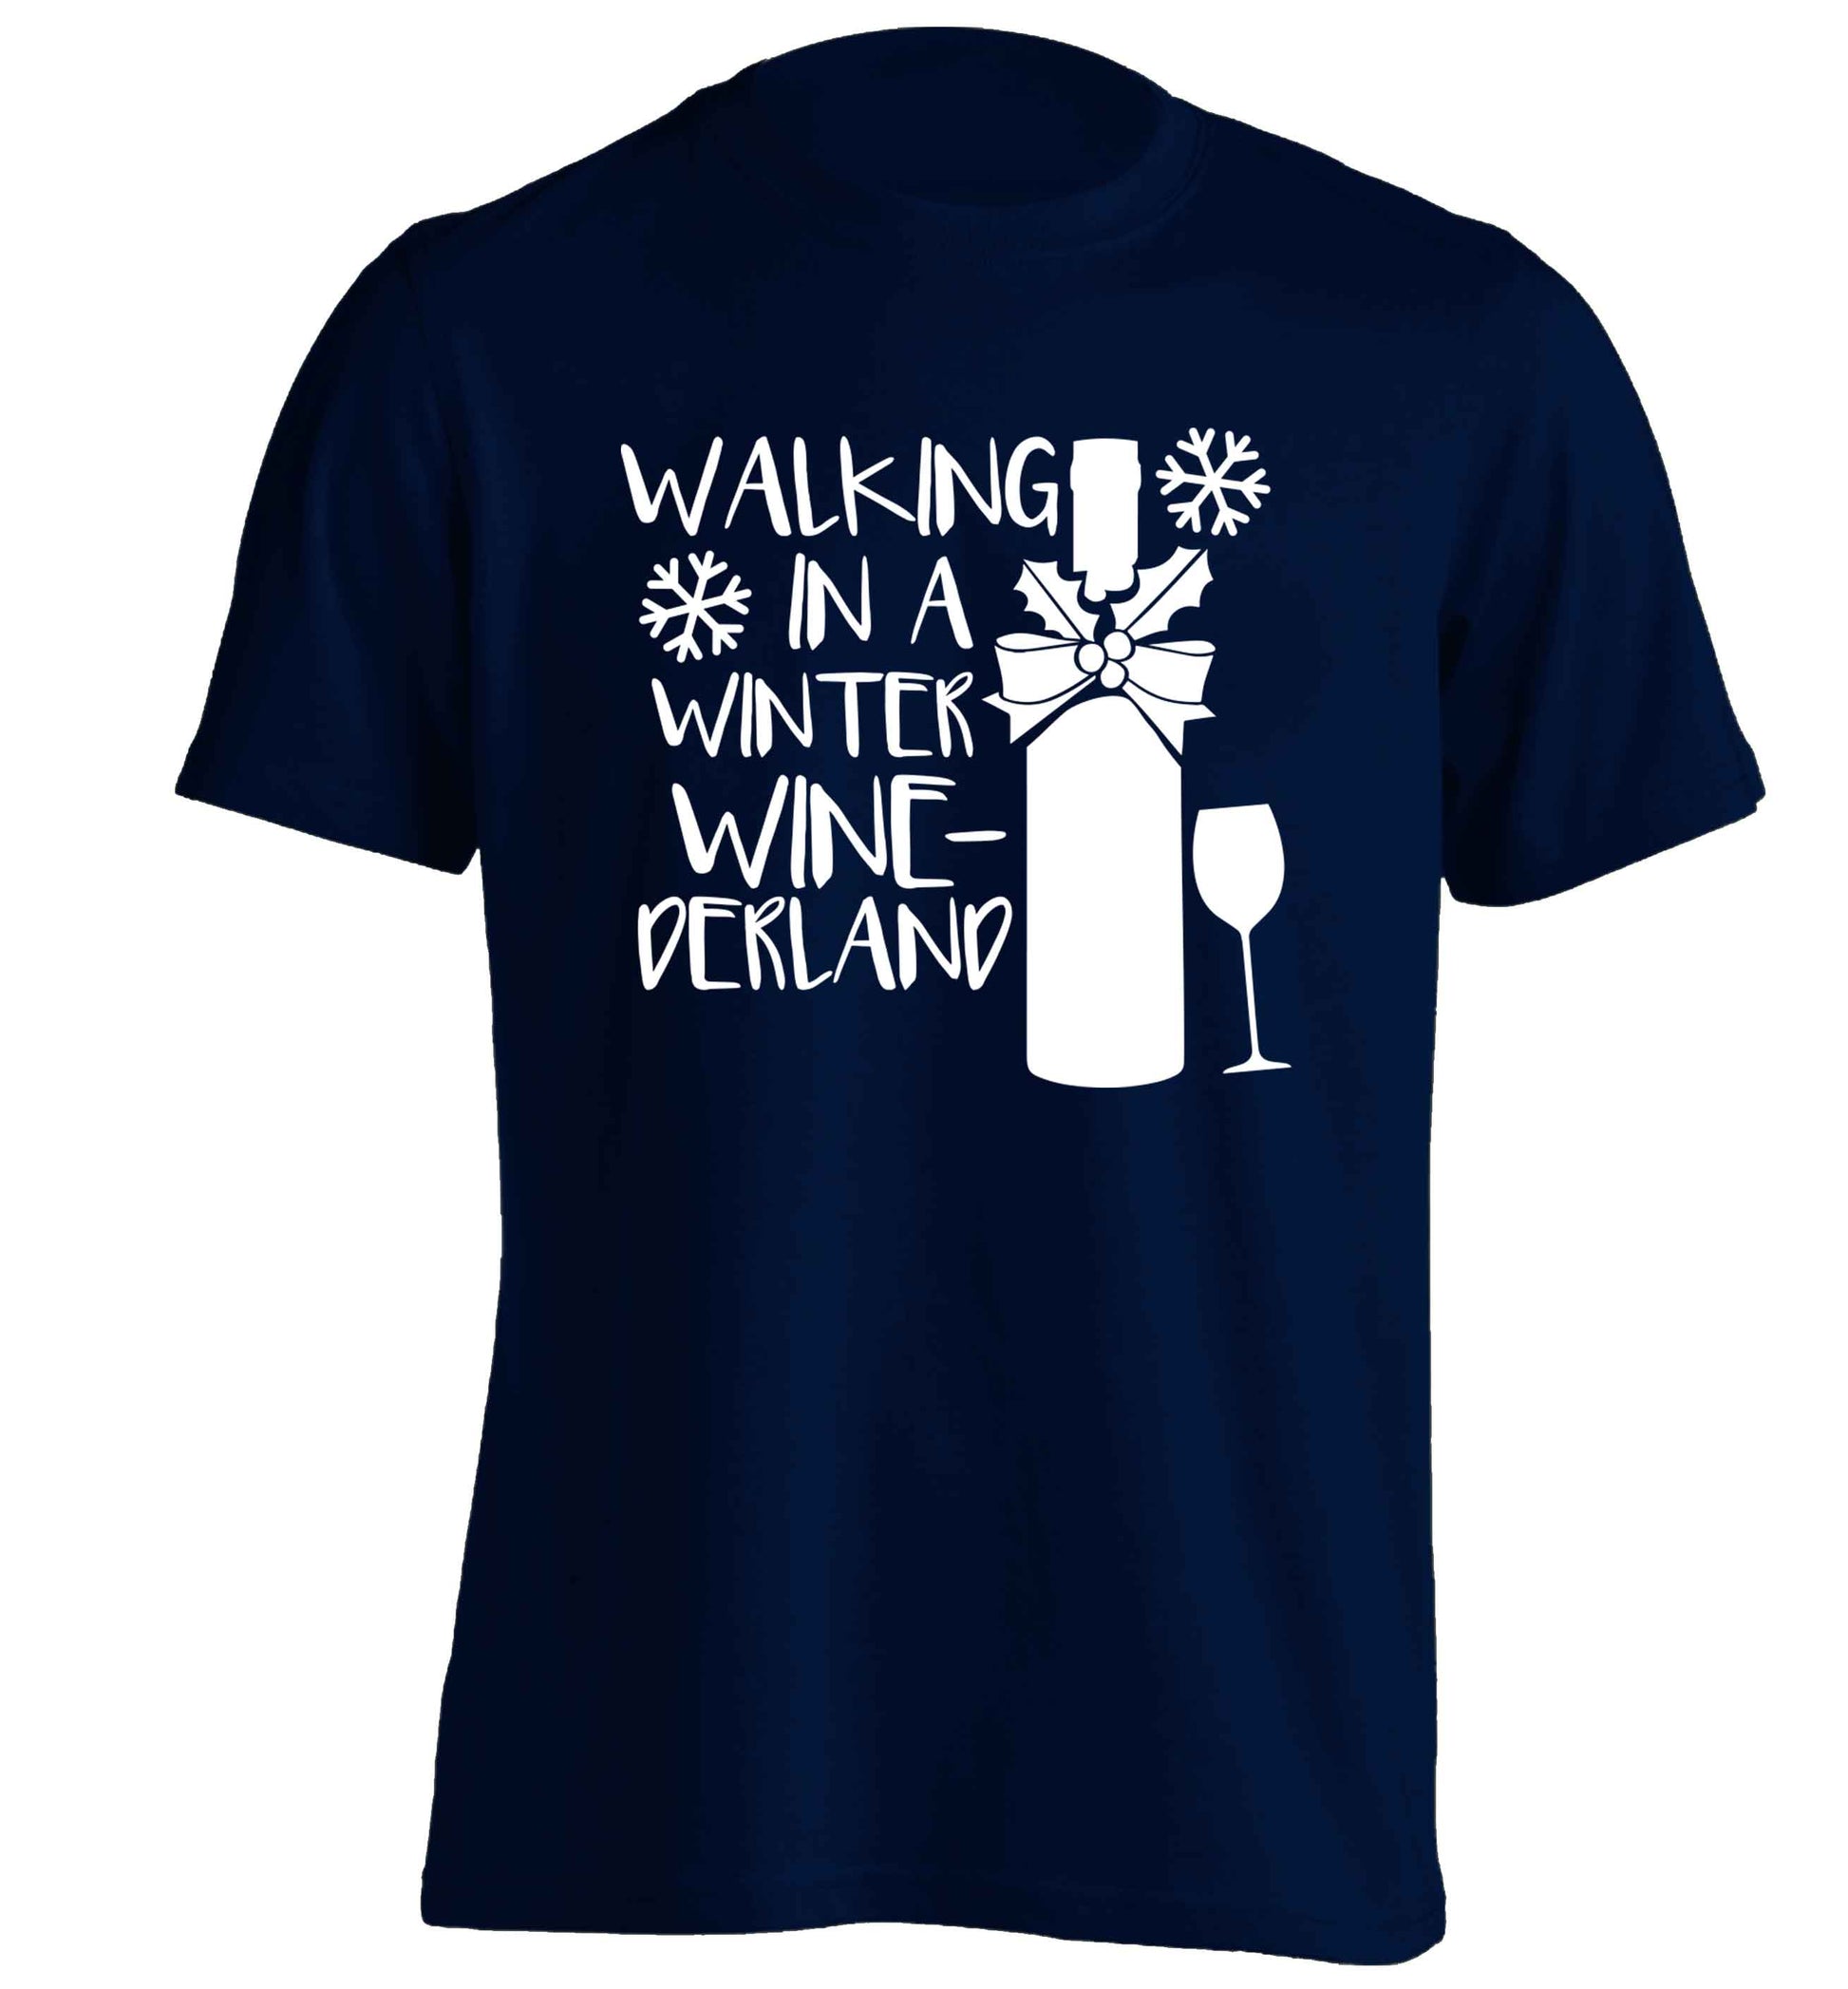 Walking in a wine-derwonderland adults unisex navy Tshirt 2XL